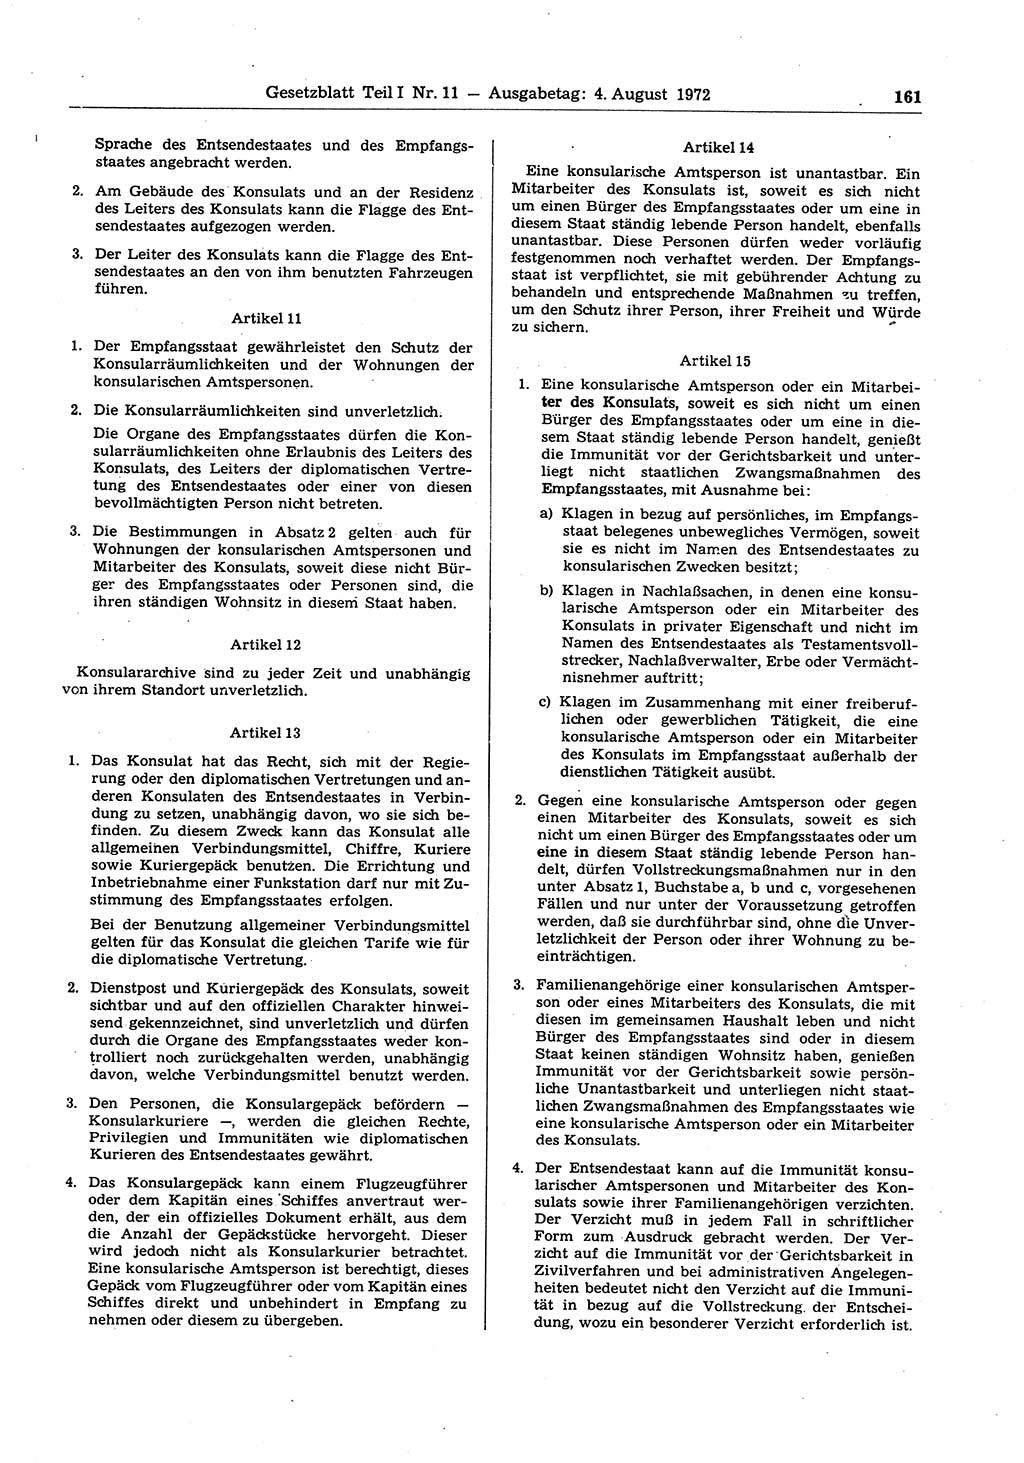 Gesetzblatt (GBl.) der Deutschen Demokratischen Republik (DDR) Teil Ⅰ 1972, Seite 161 (GBl. DDR Ⅰ 1972, S. 161)